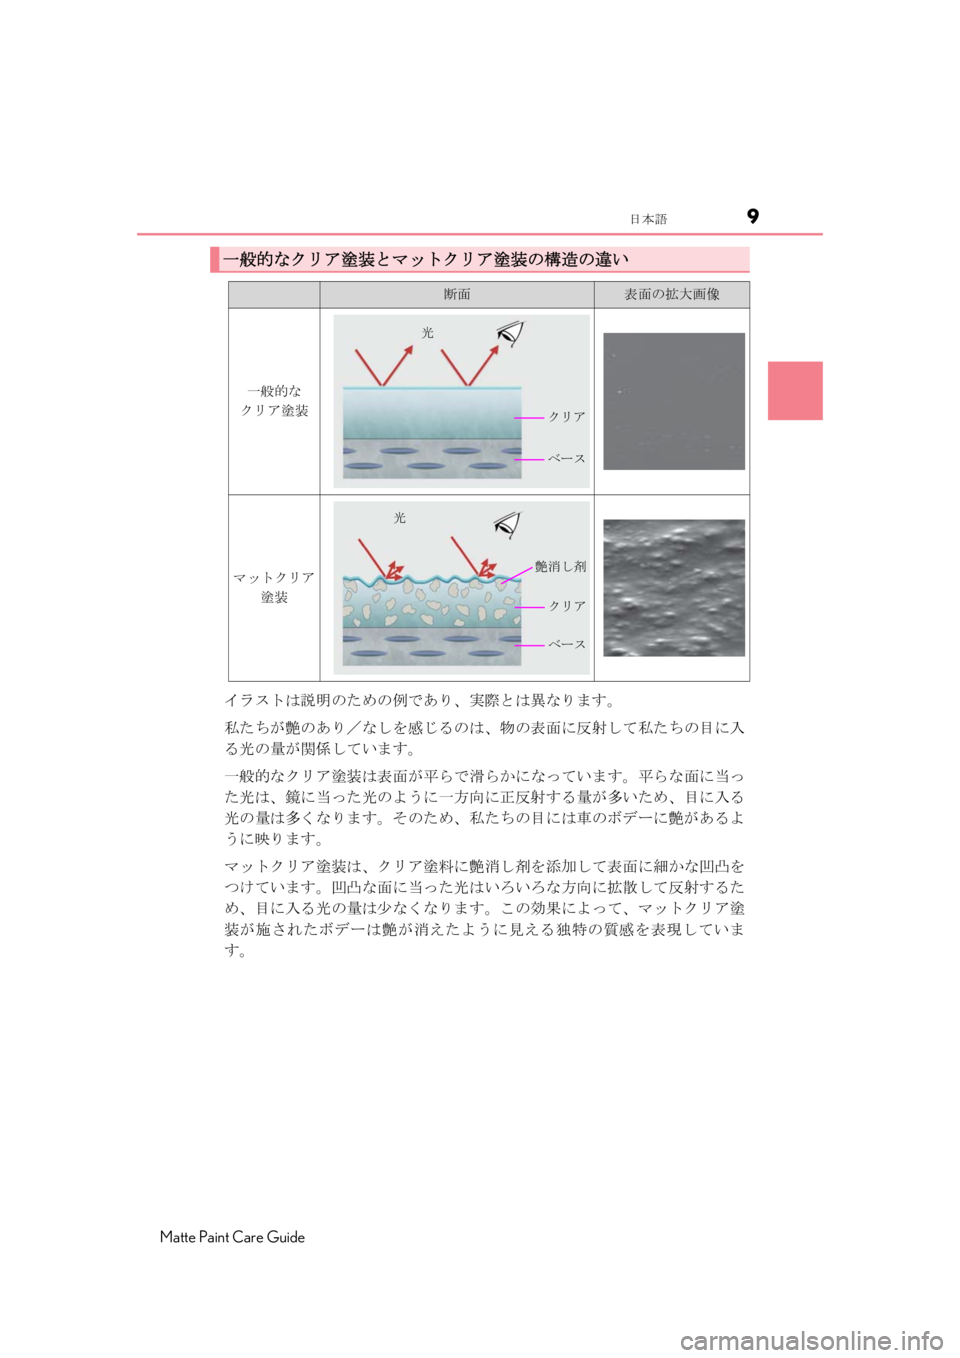 LEXUS RC F 2020  Owners Manual 9日本語
Matte Paint Care Guide
イラストは説明のための例であり、実際とは異なります。
私たちが艶のあり／なしを感じるのは、物の表面に反射して私た